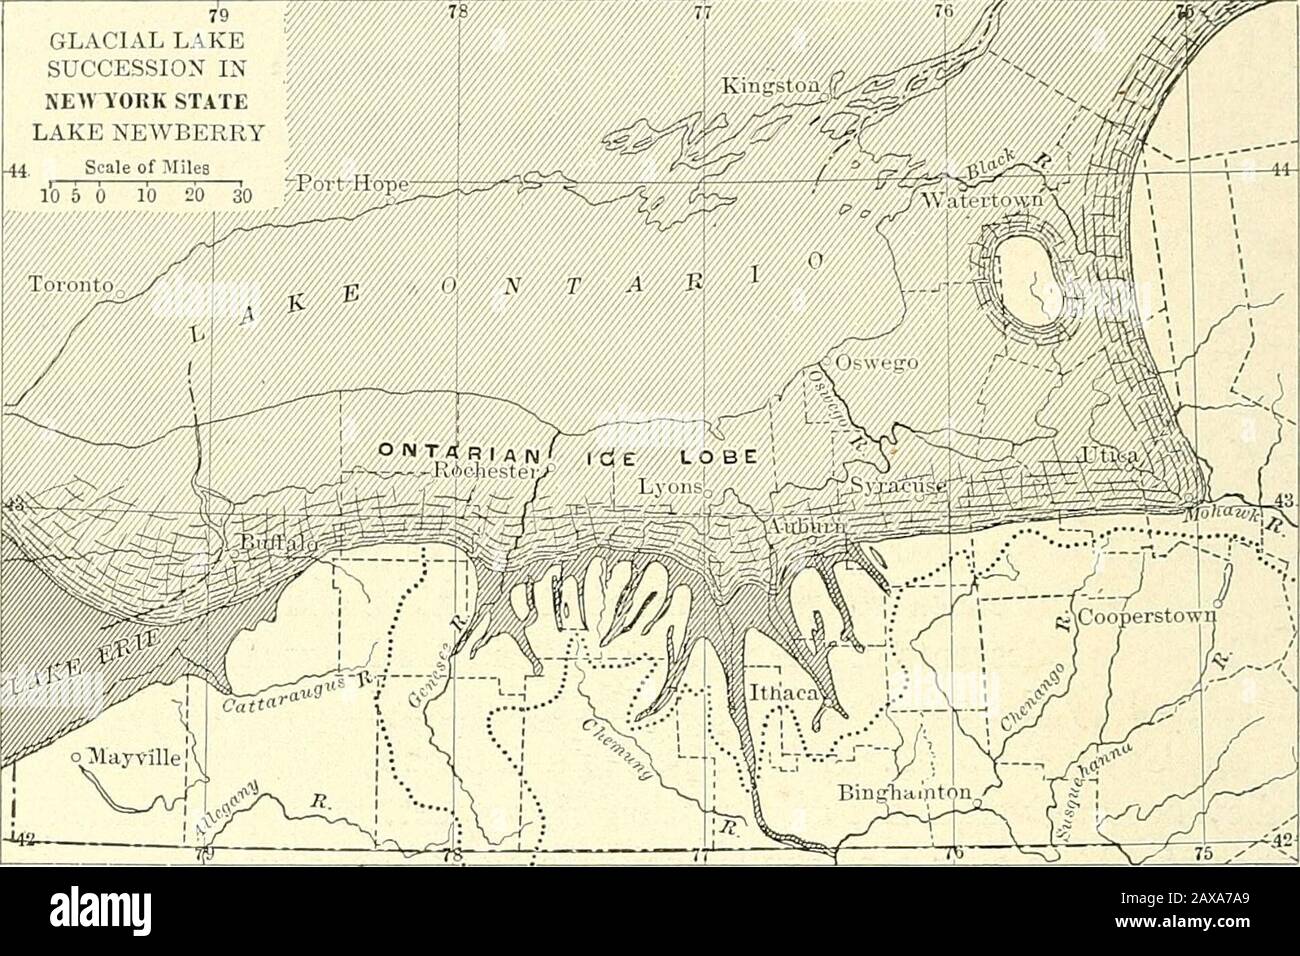 Waldphysiographie; Physiographie der Vereinigten Staaten und Prinzipien der Böden in Bezug auf die Forstwirtschaft zwischen dem Ontario- und dem Susquehanna-Abfluss. Die ersten Eisansammlungen dämpften das Wasser an den Köpfen der großen Täler im Süden. Nach dem allmählichen Rückzug der Eiswürmer wurden die Austritte am Eisrand vorbei und über das Höhenplateau zwischen den Seen verteilt, so dass hohe Talseen intolower Talseen abließen; Als die Eisfront noch weiter zurückging, senkten sich die Seen weresuccessiv ab und verlagerten sich nach Norden und es bildeten sich Flüsse im Inter- oder Sportra Stockfoto